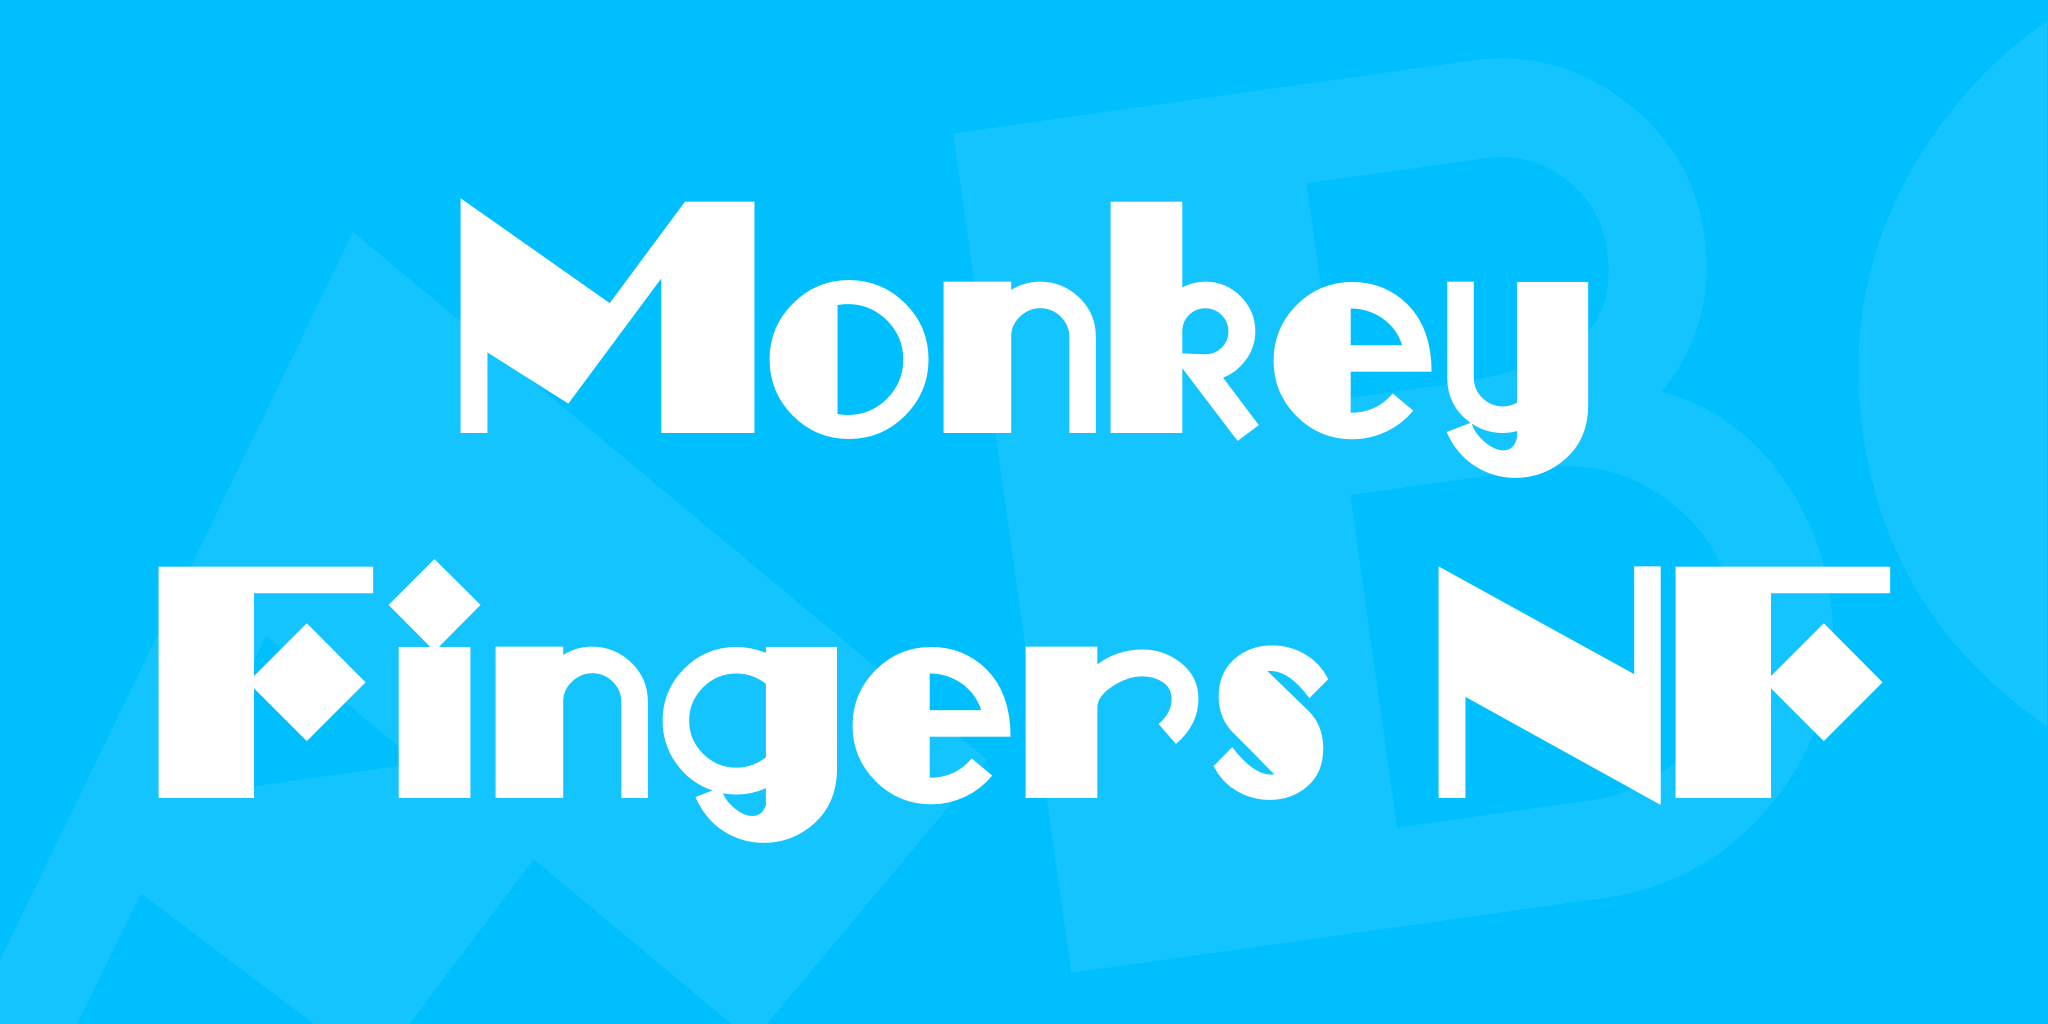 Monkey Fingers Nf